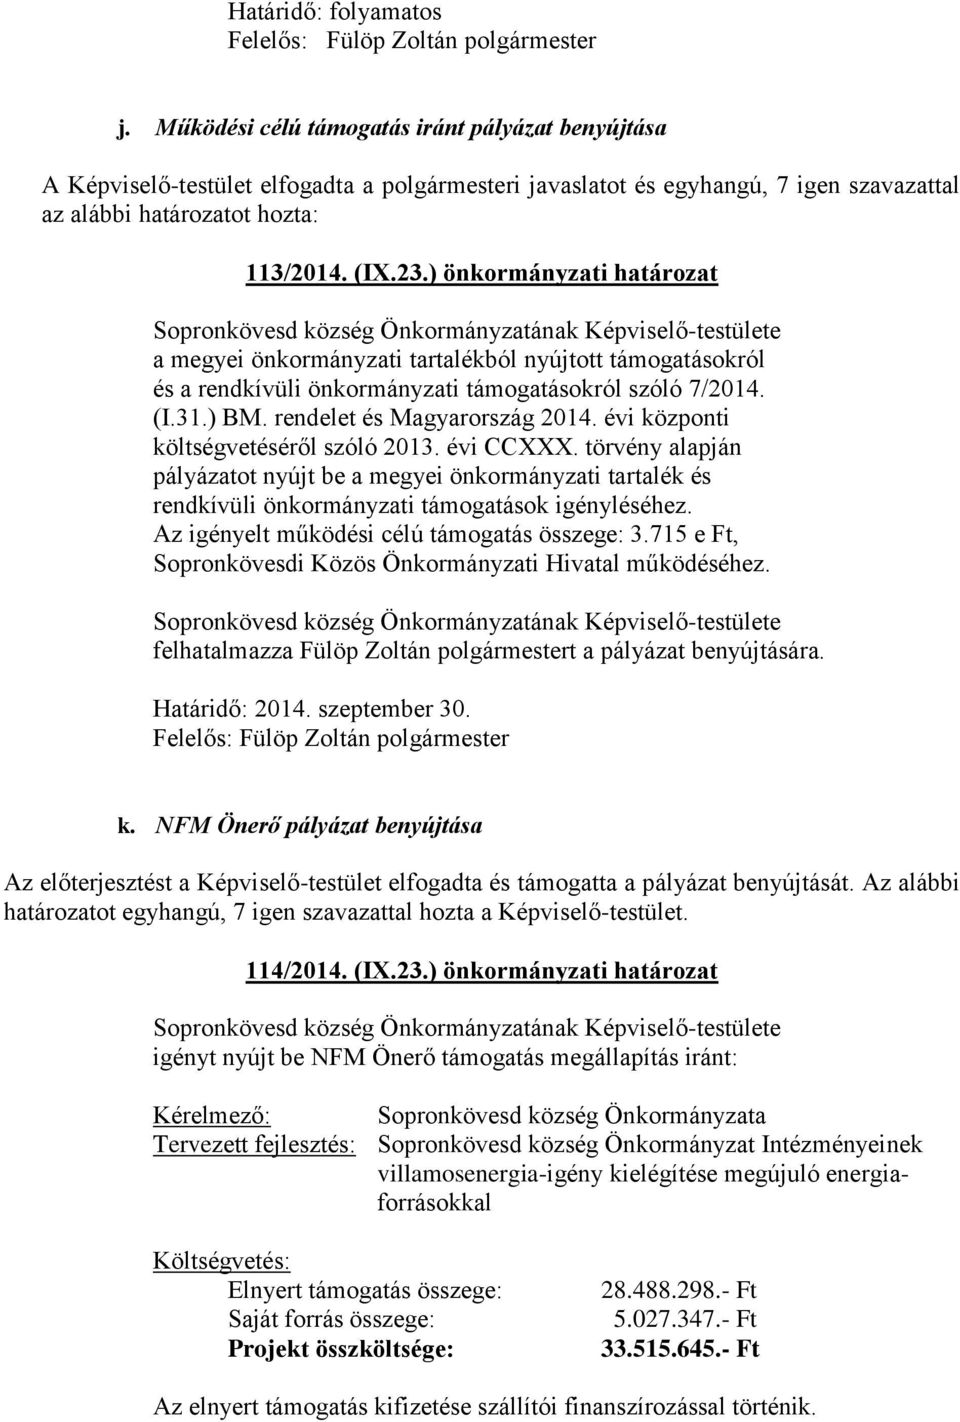 ) önkormányzati határozat a megyei önkormányzati tartalékból nyújtott támogatásokról és a rendkívüli önkormányzati támogatásokról szóló 7/2014. (I.31.) BM. rendelet és Magyarország 2014.